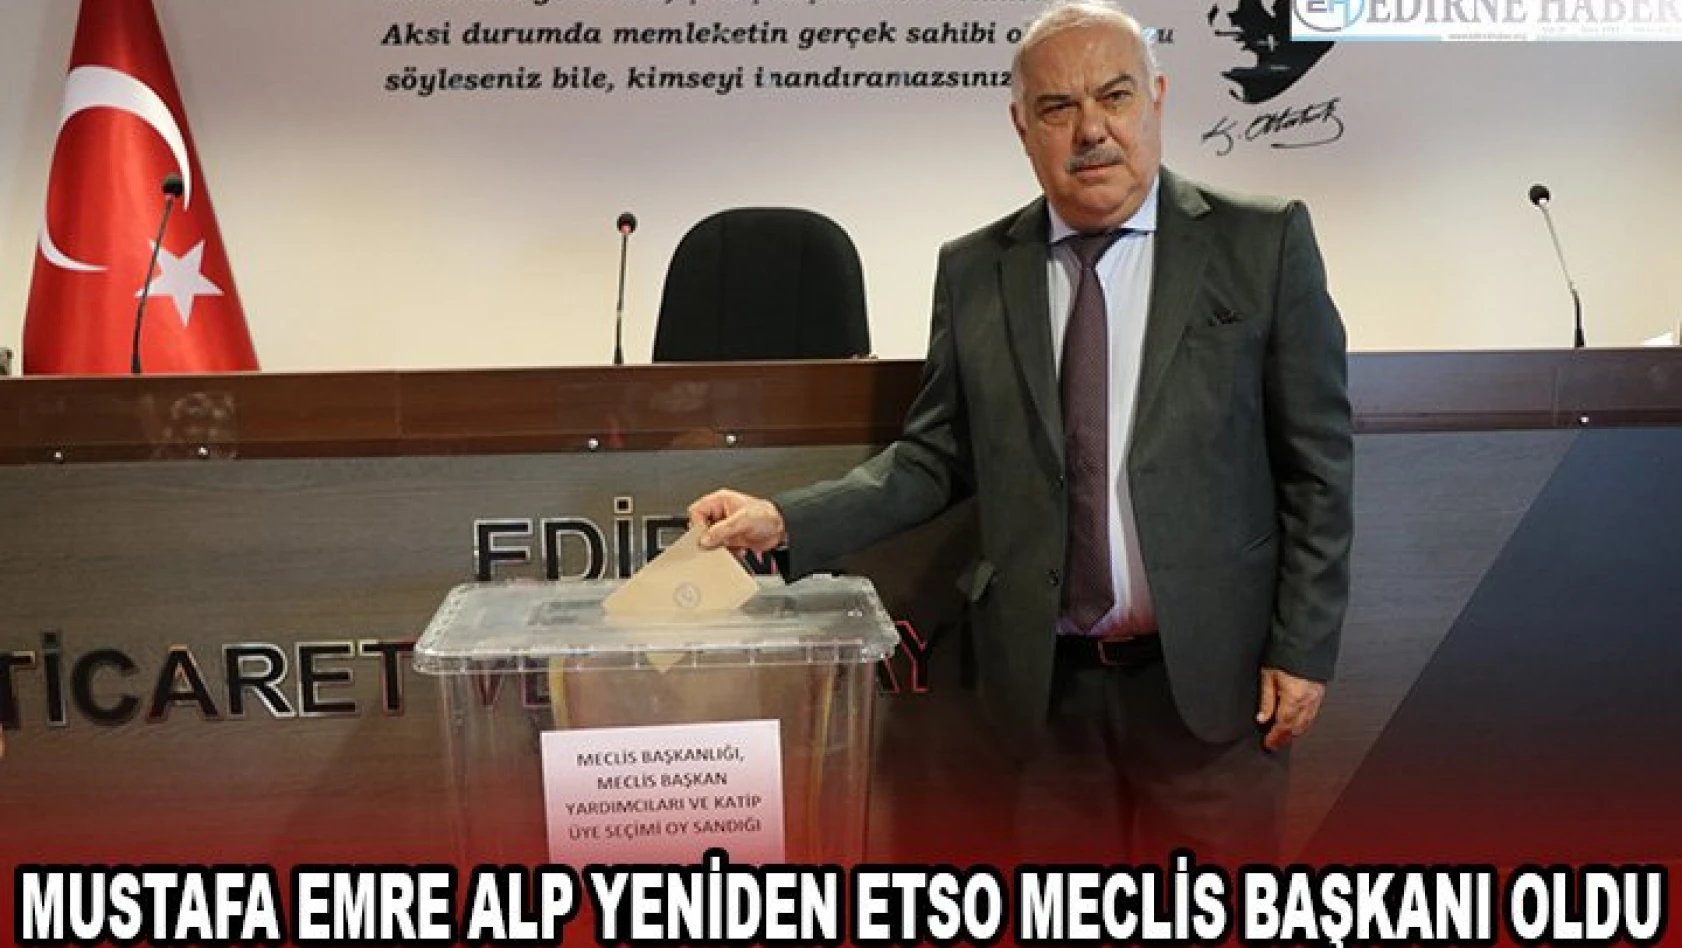 Mustafa Emre Alp yeniden ETSO Meclis Başkanı oldu